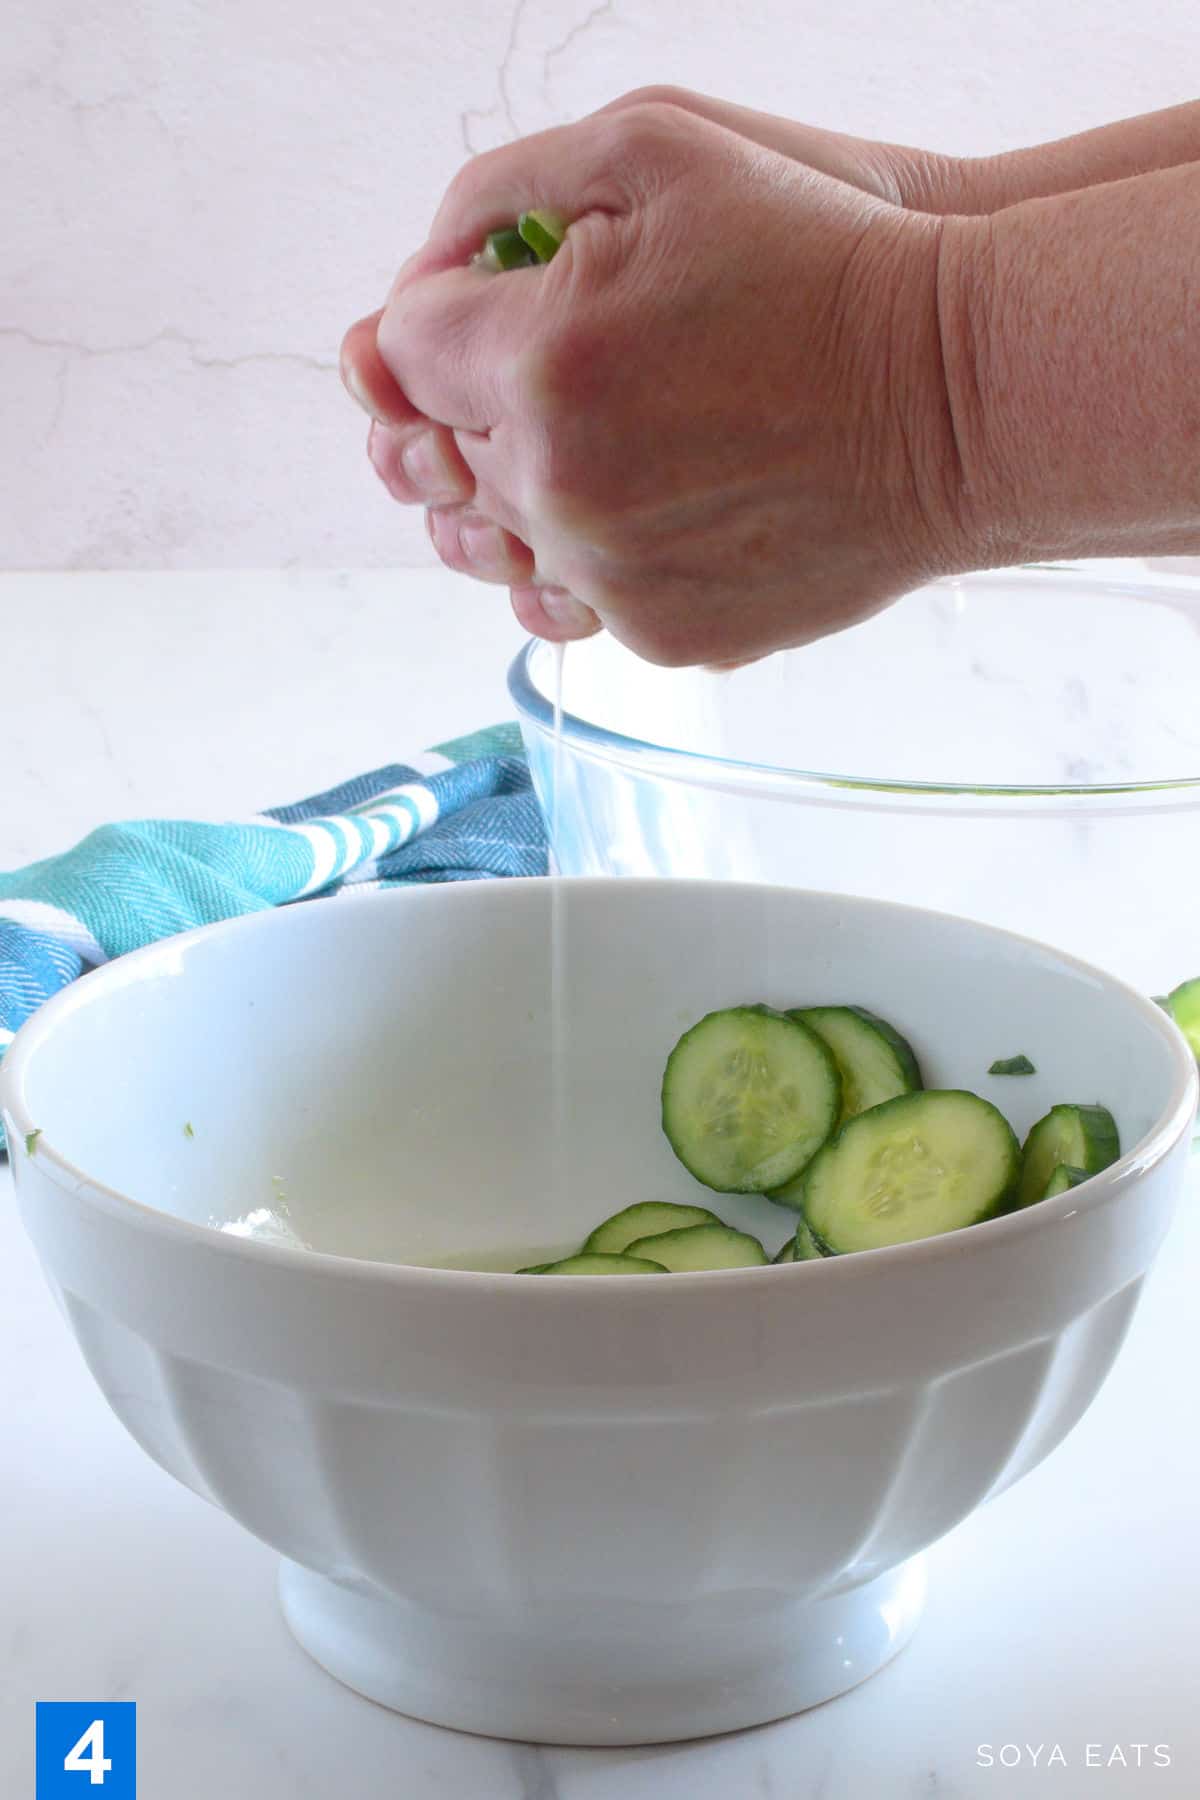 Squeezing liquid from cucumber slices.